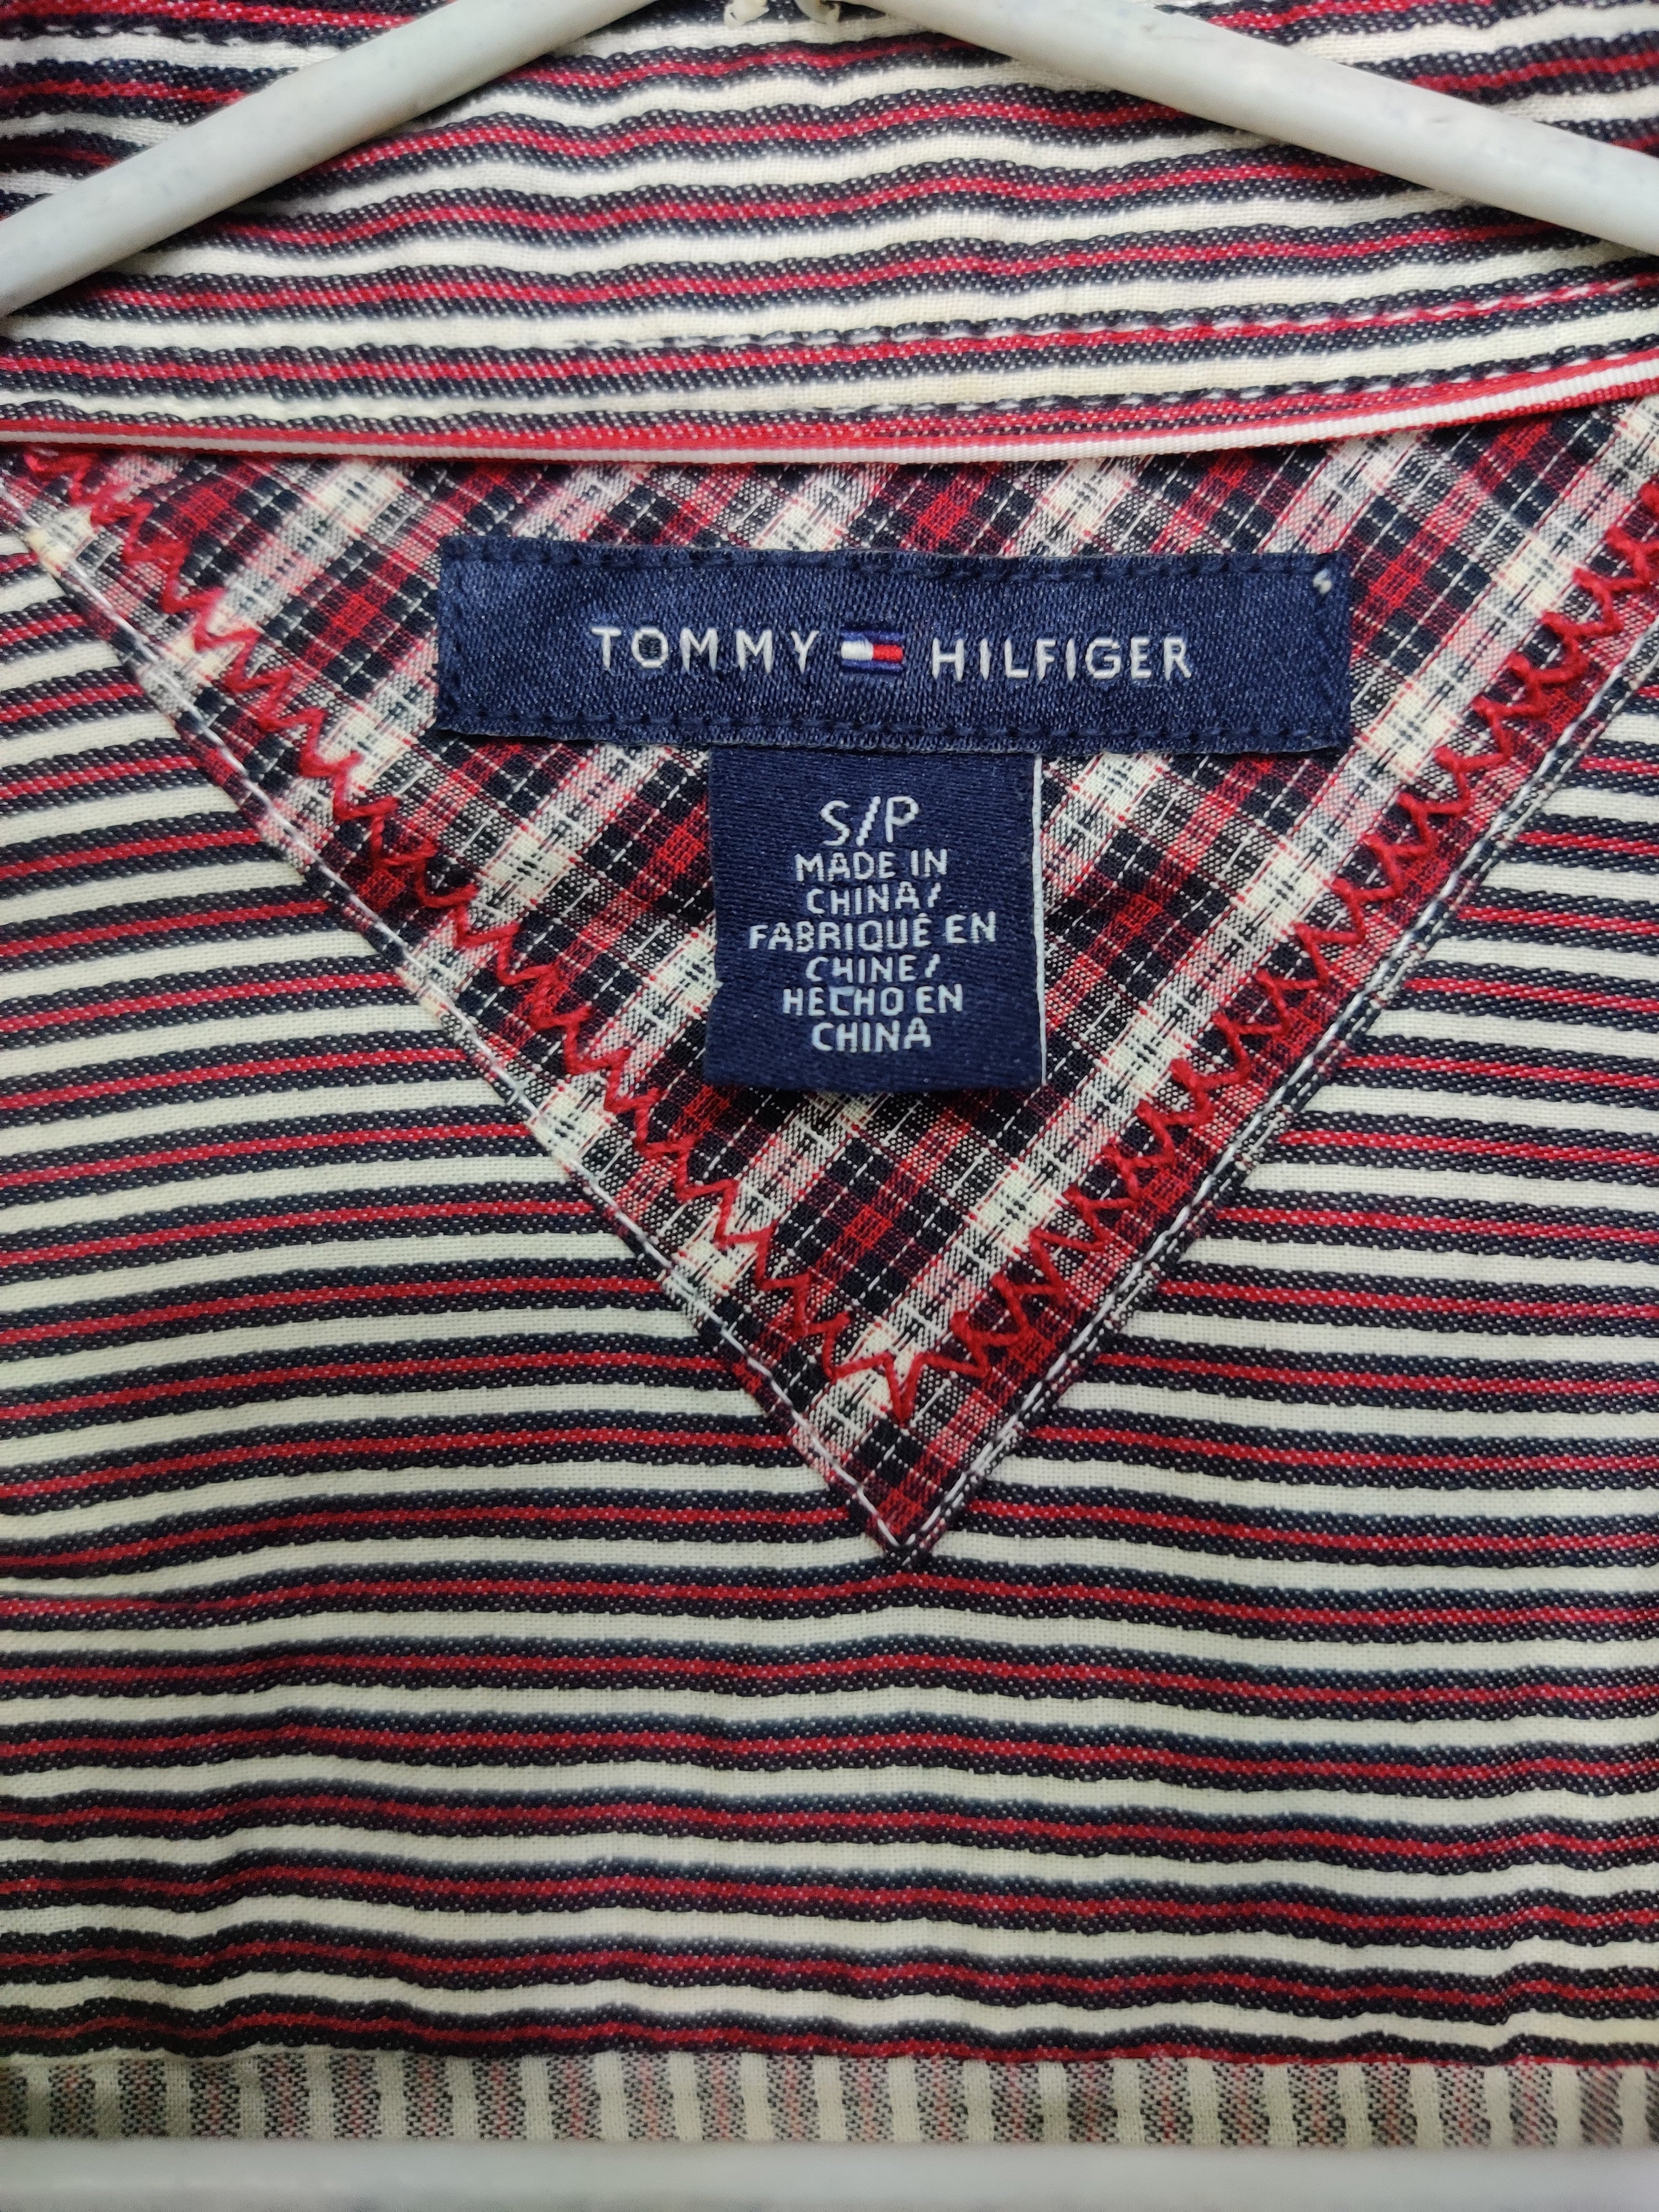 Tommy Hilfiger Branded Original Cotton For Women Tops – Preloved Labels